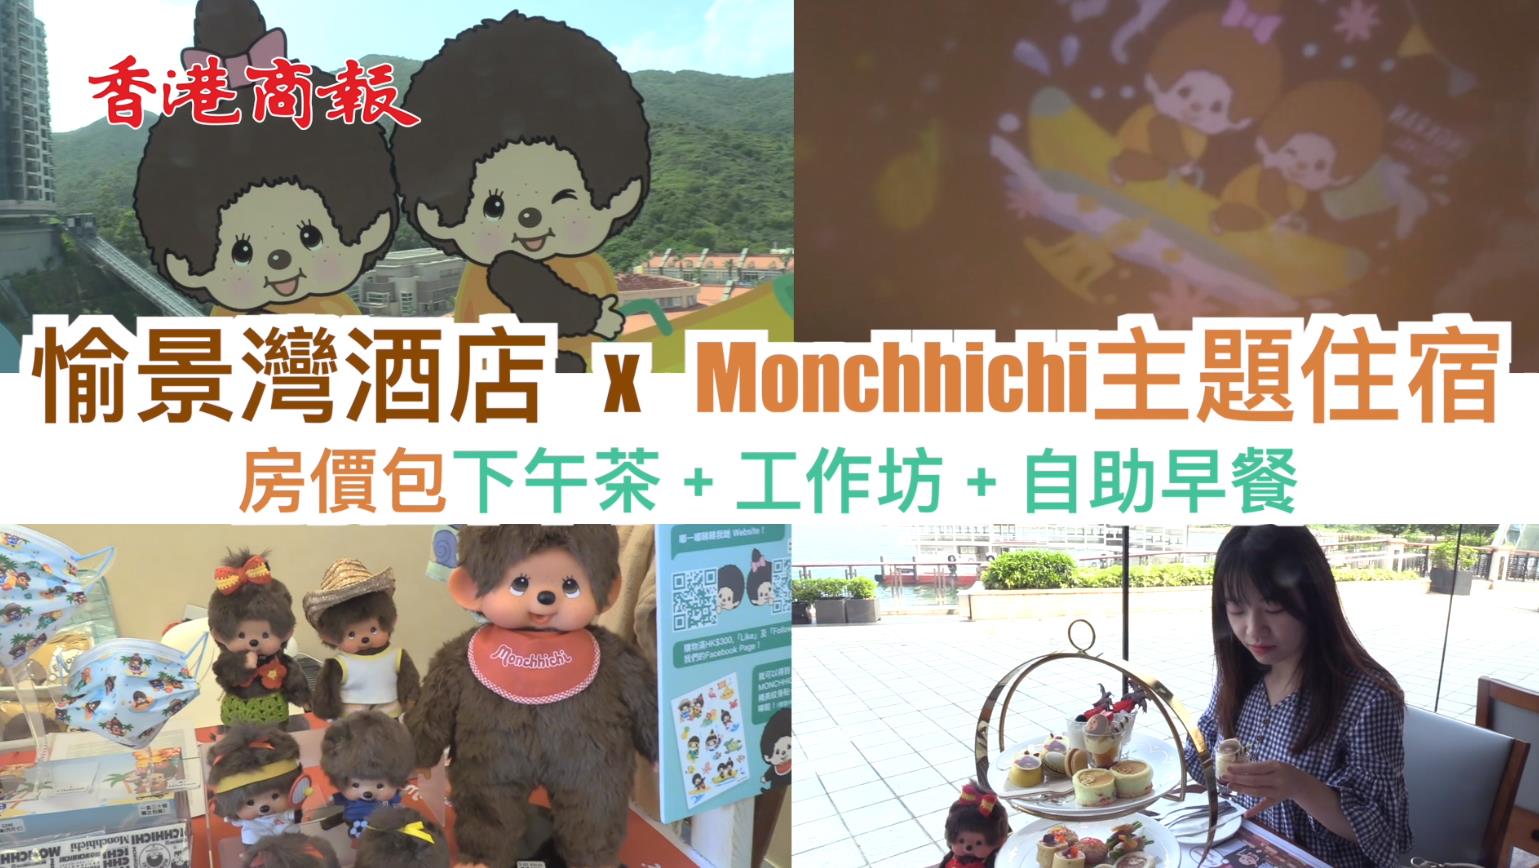 【旅遊】有片 |暑假Staycation！愉景灣酒店推Monchhichi夏日祭